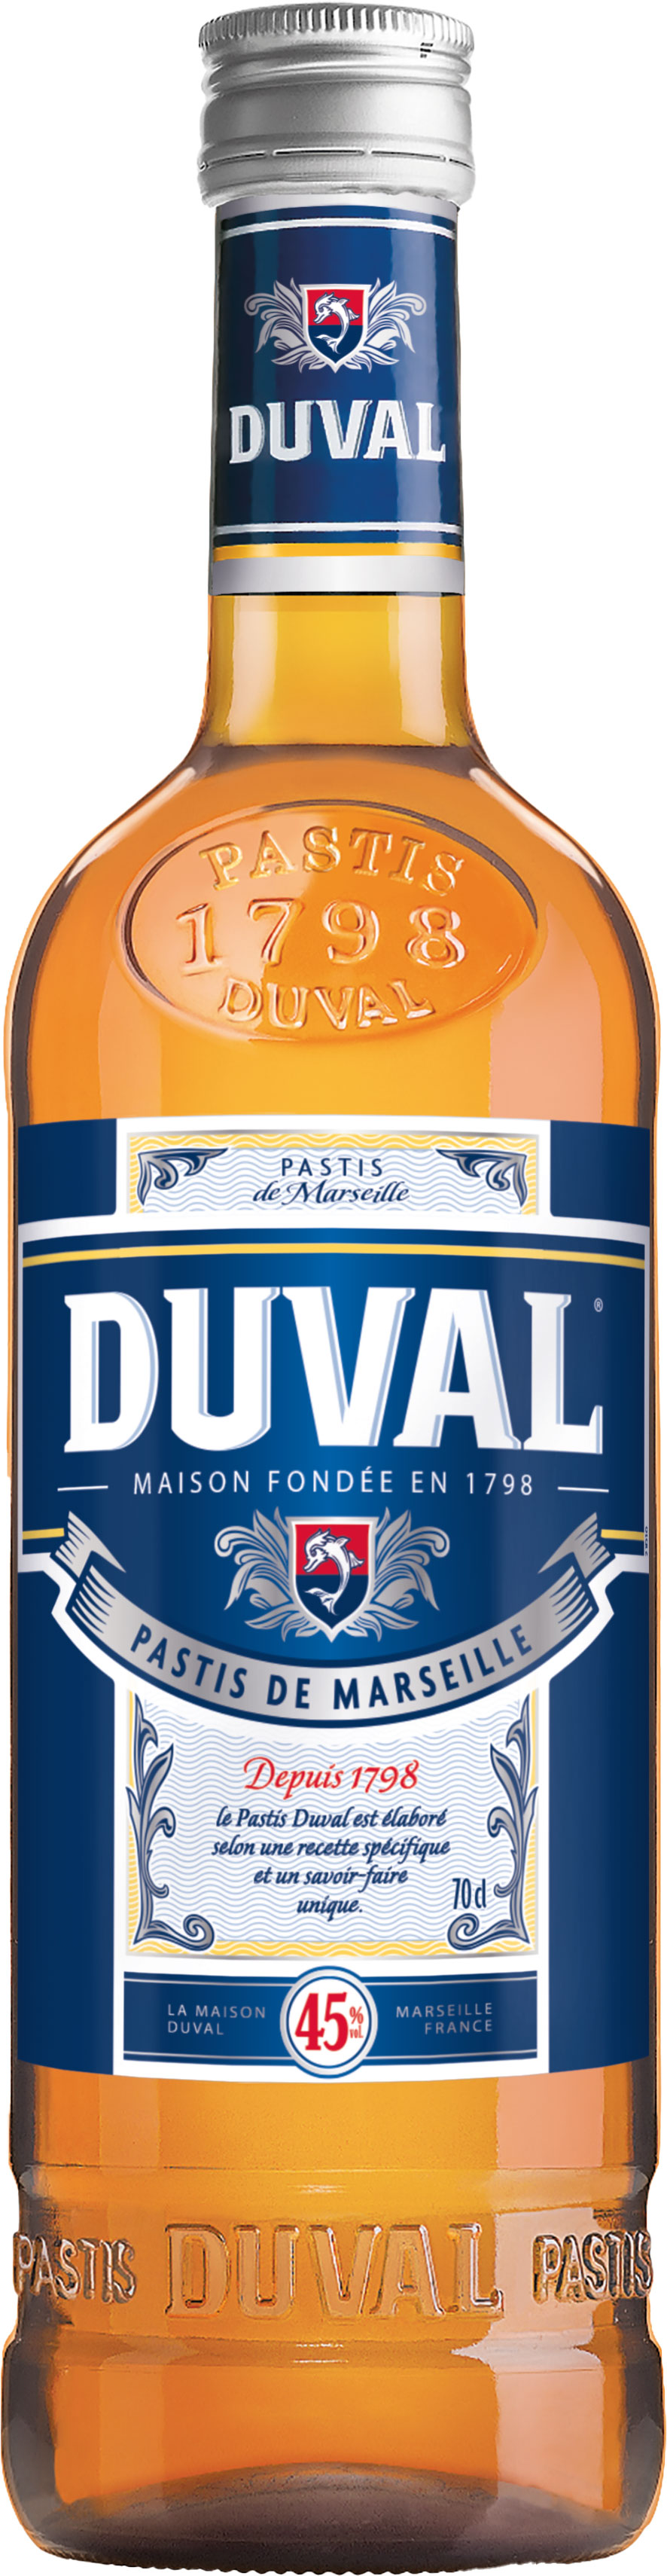 Duval Pastis vol. de 0,7 45% l Schneekloth Marseille 